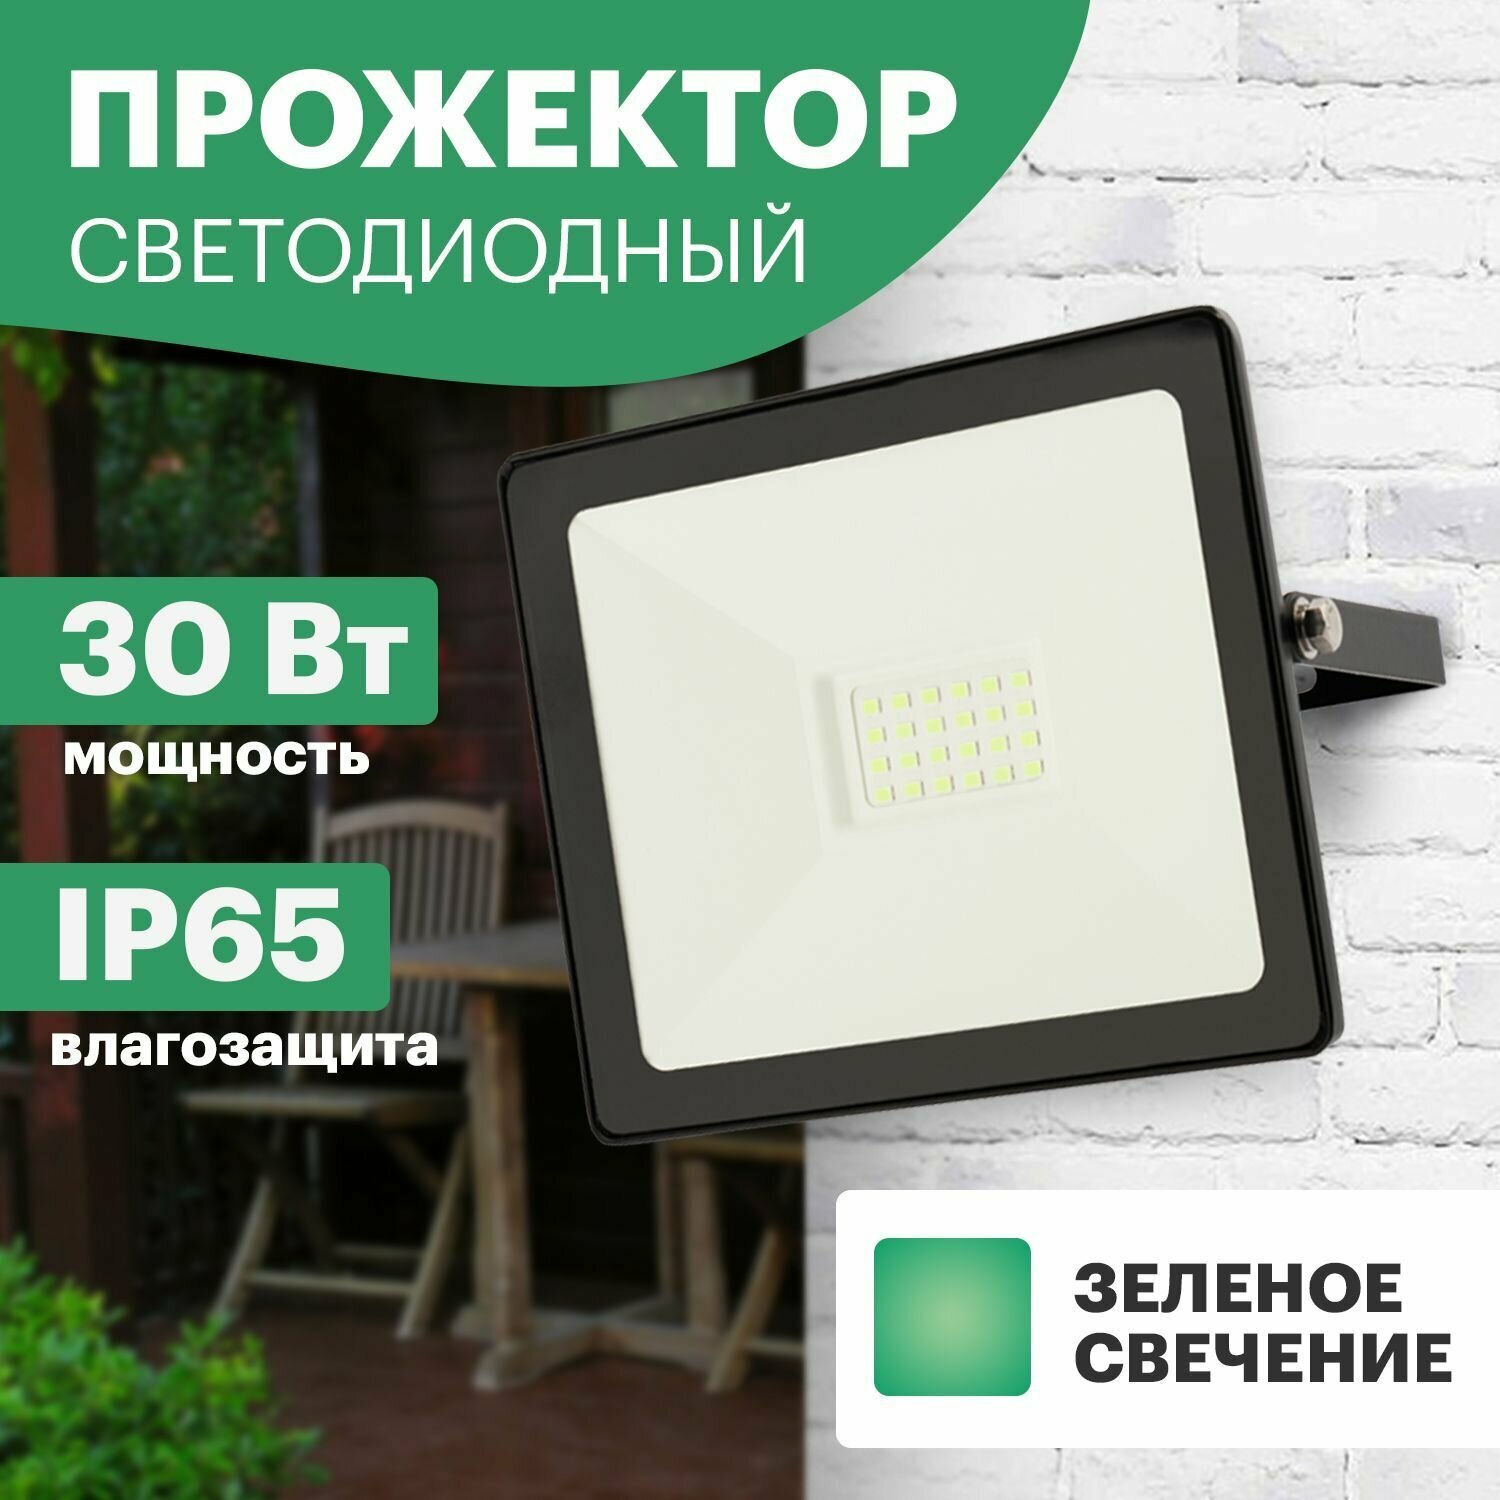 Светодиодный прожектор Rexant 30 Вт, 3150 Лм, цвет свечения зеленый